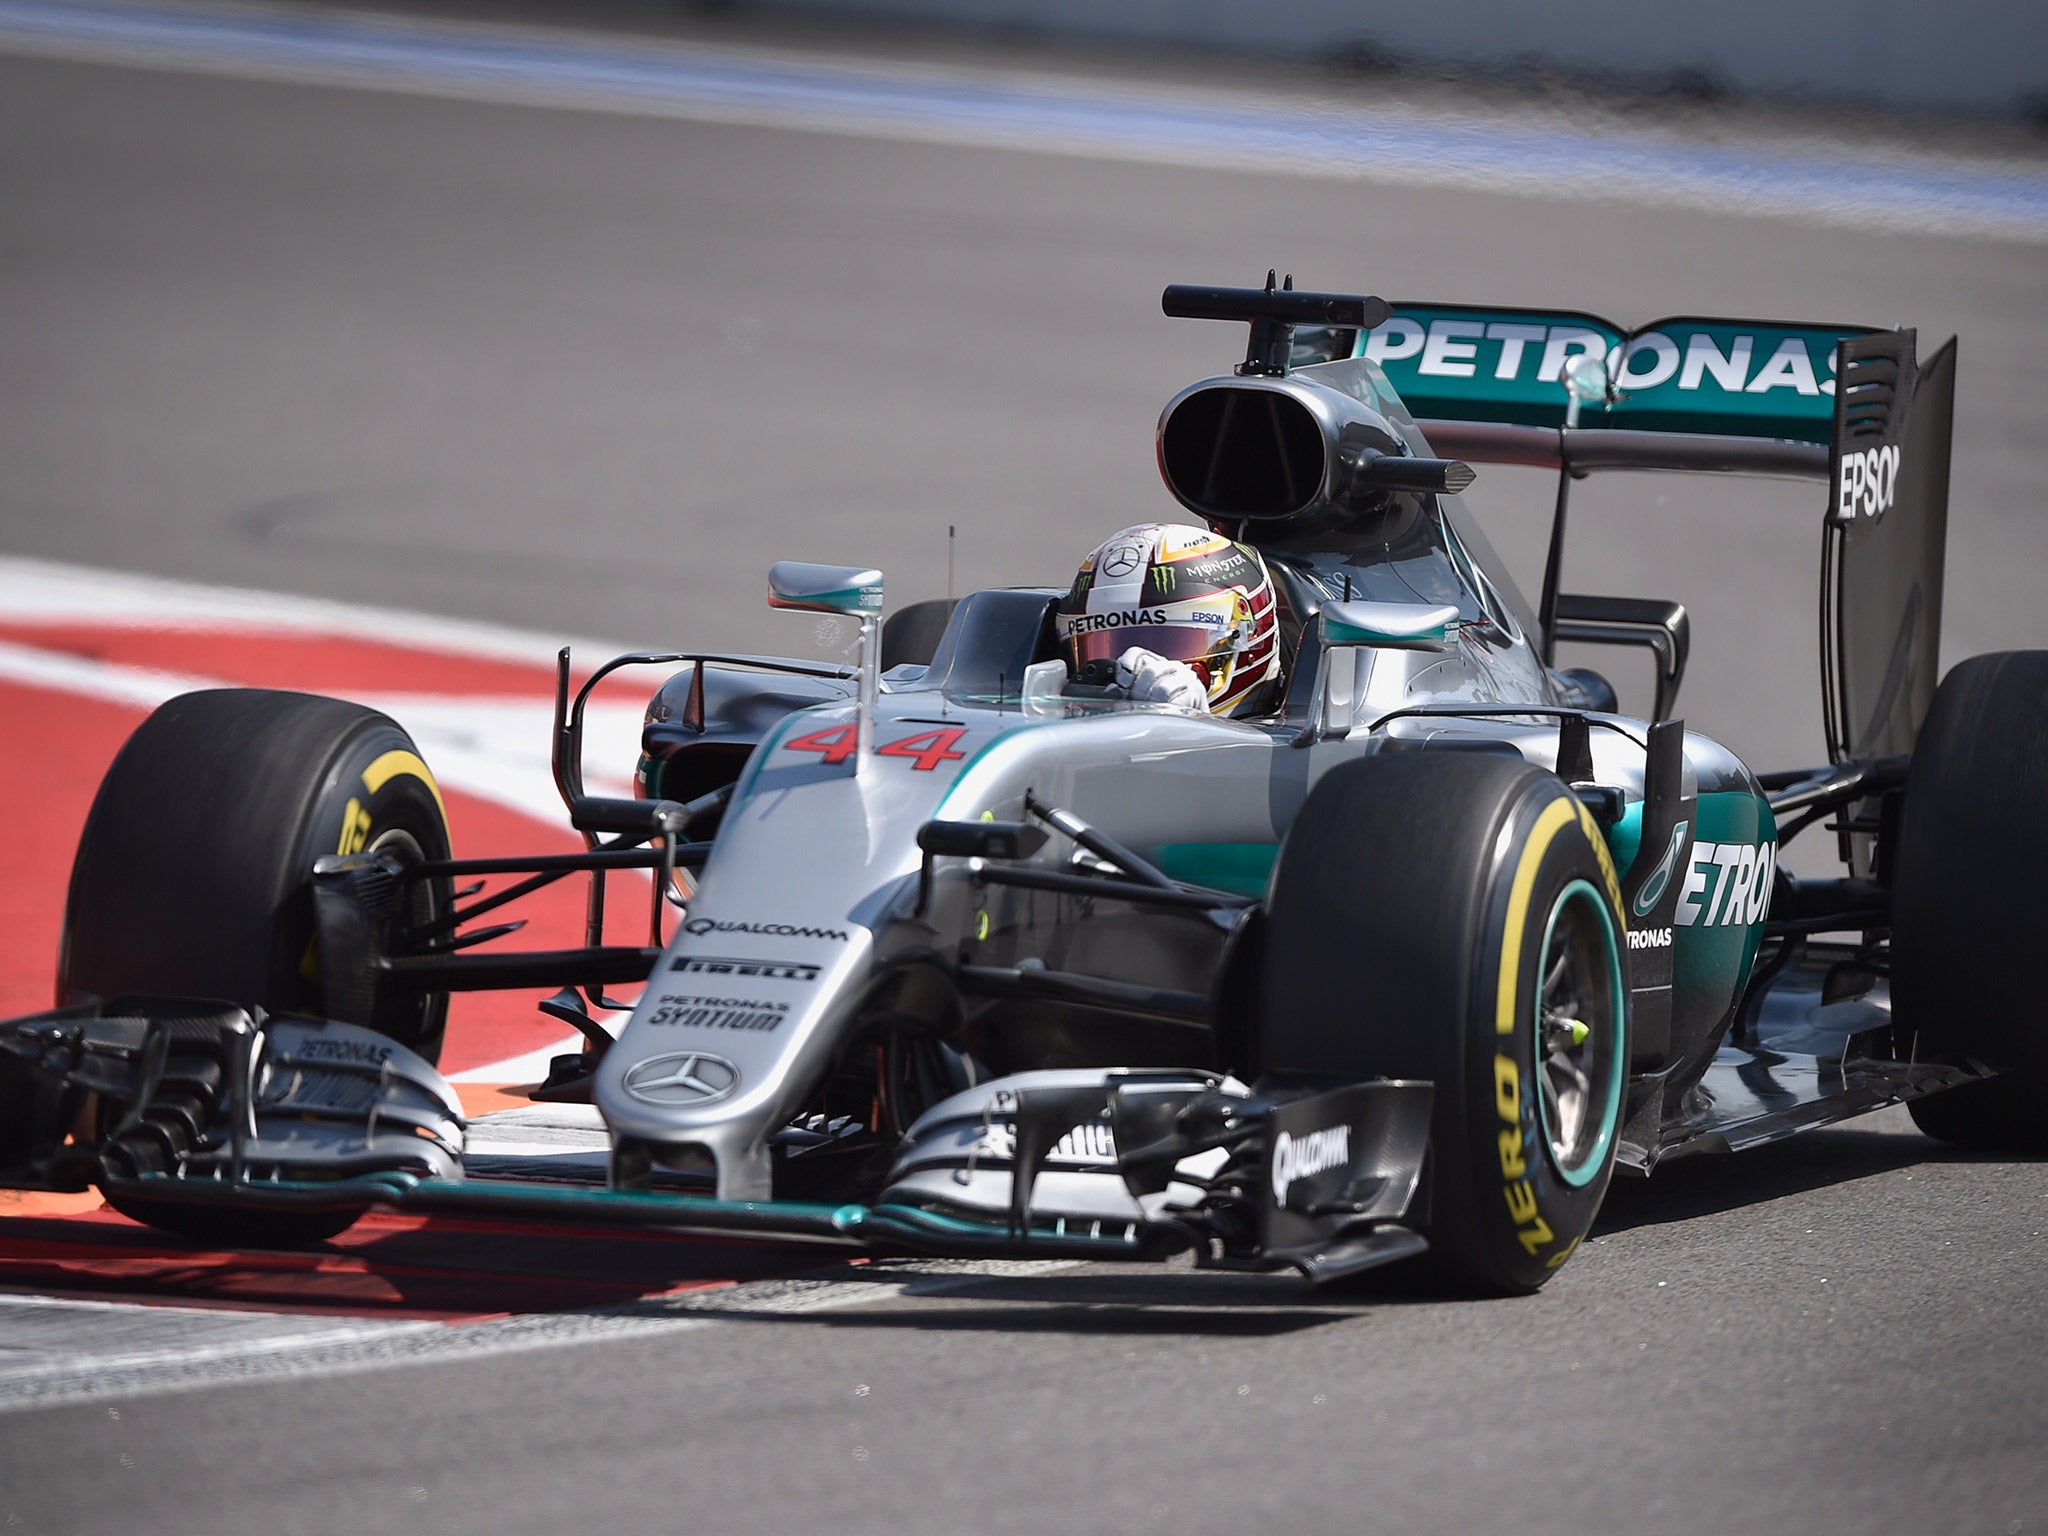 Lewis Hamilton finished Friday practice fastest